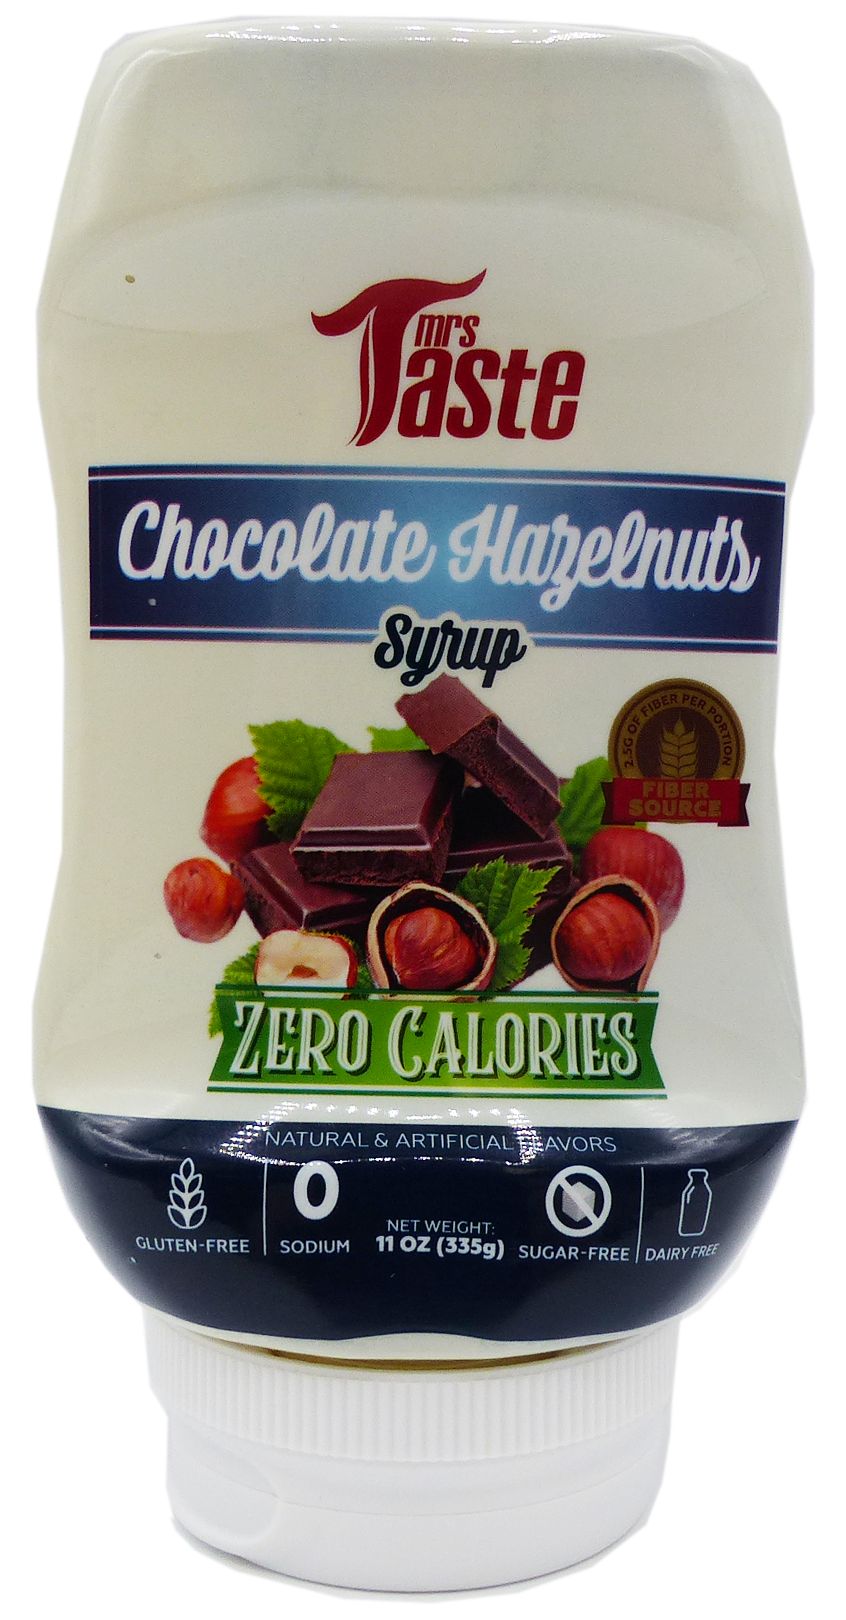 #Flavor_Chocolate Hazelnuts #Size_11 oz